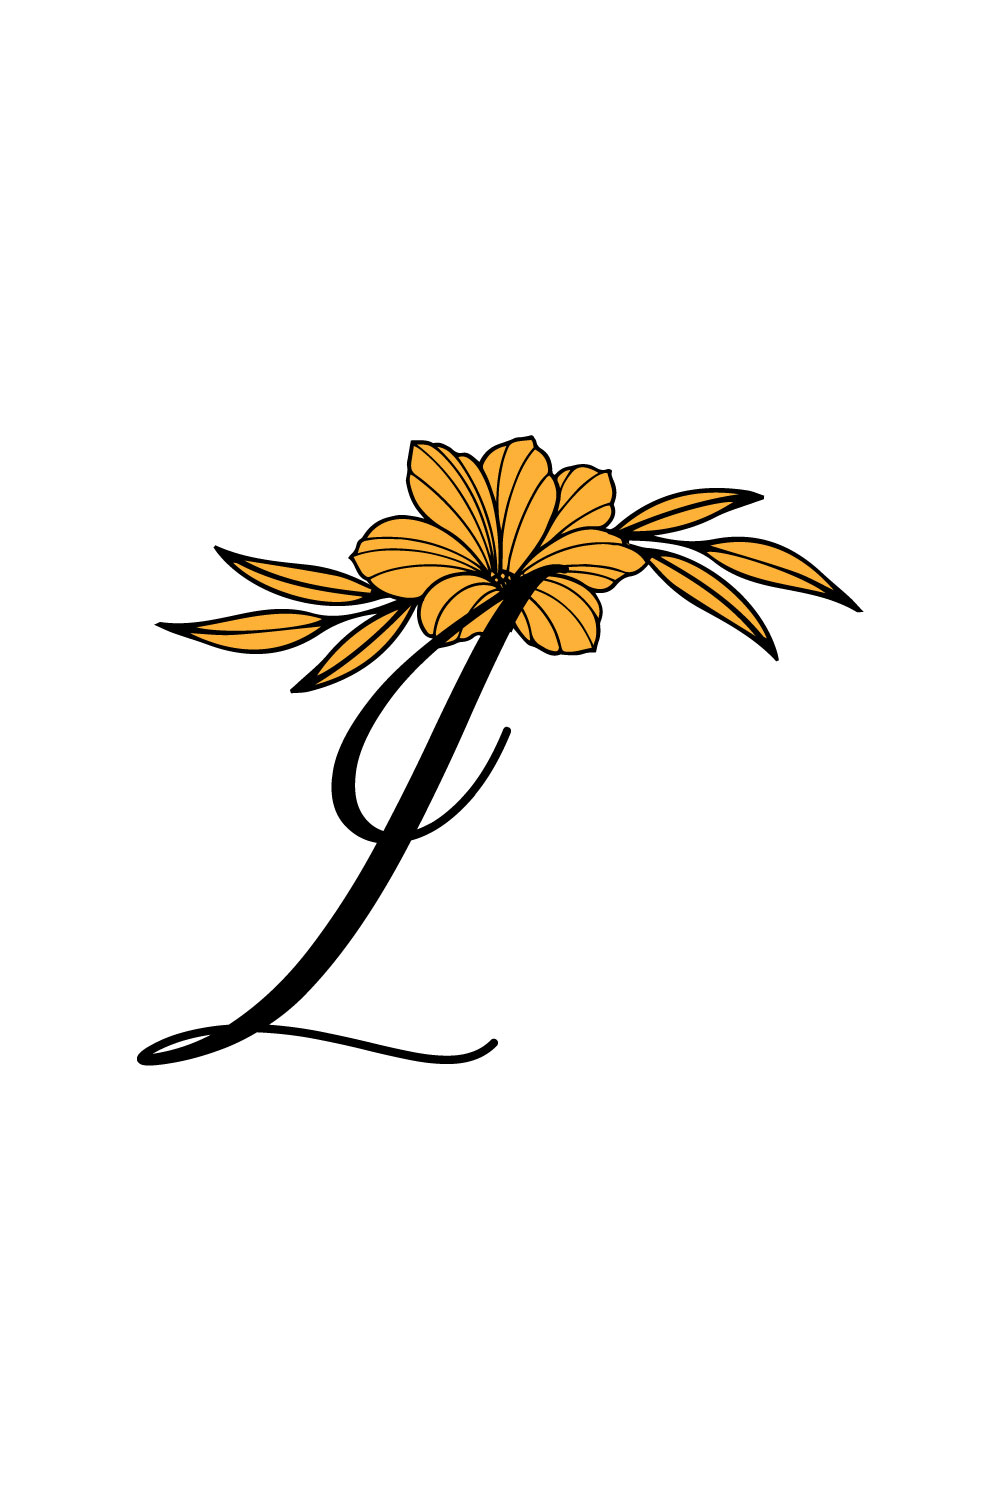 Free K Letter Nice Flower Logo pinterest preview image.